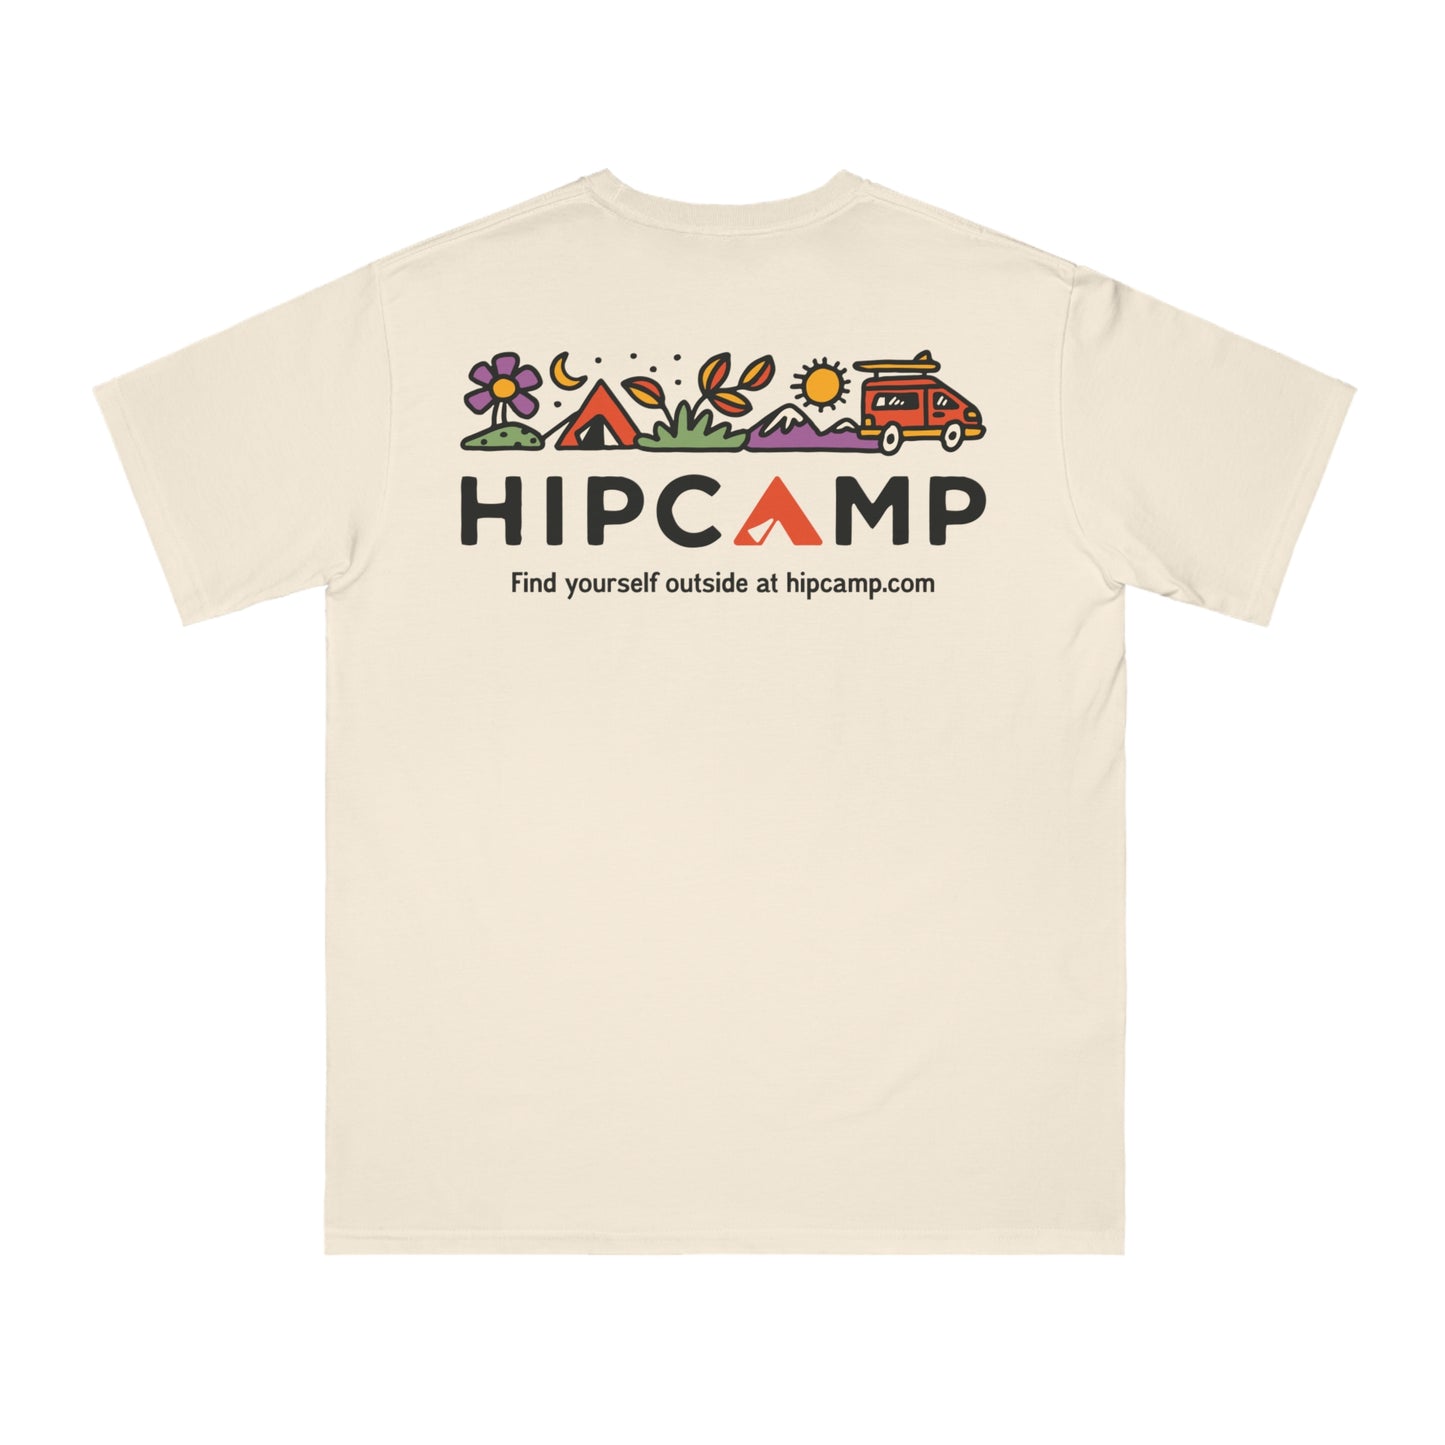 Hipcamp Tradeshow Tee I